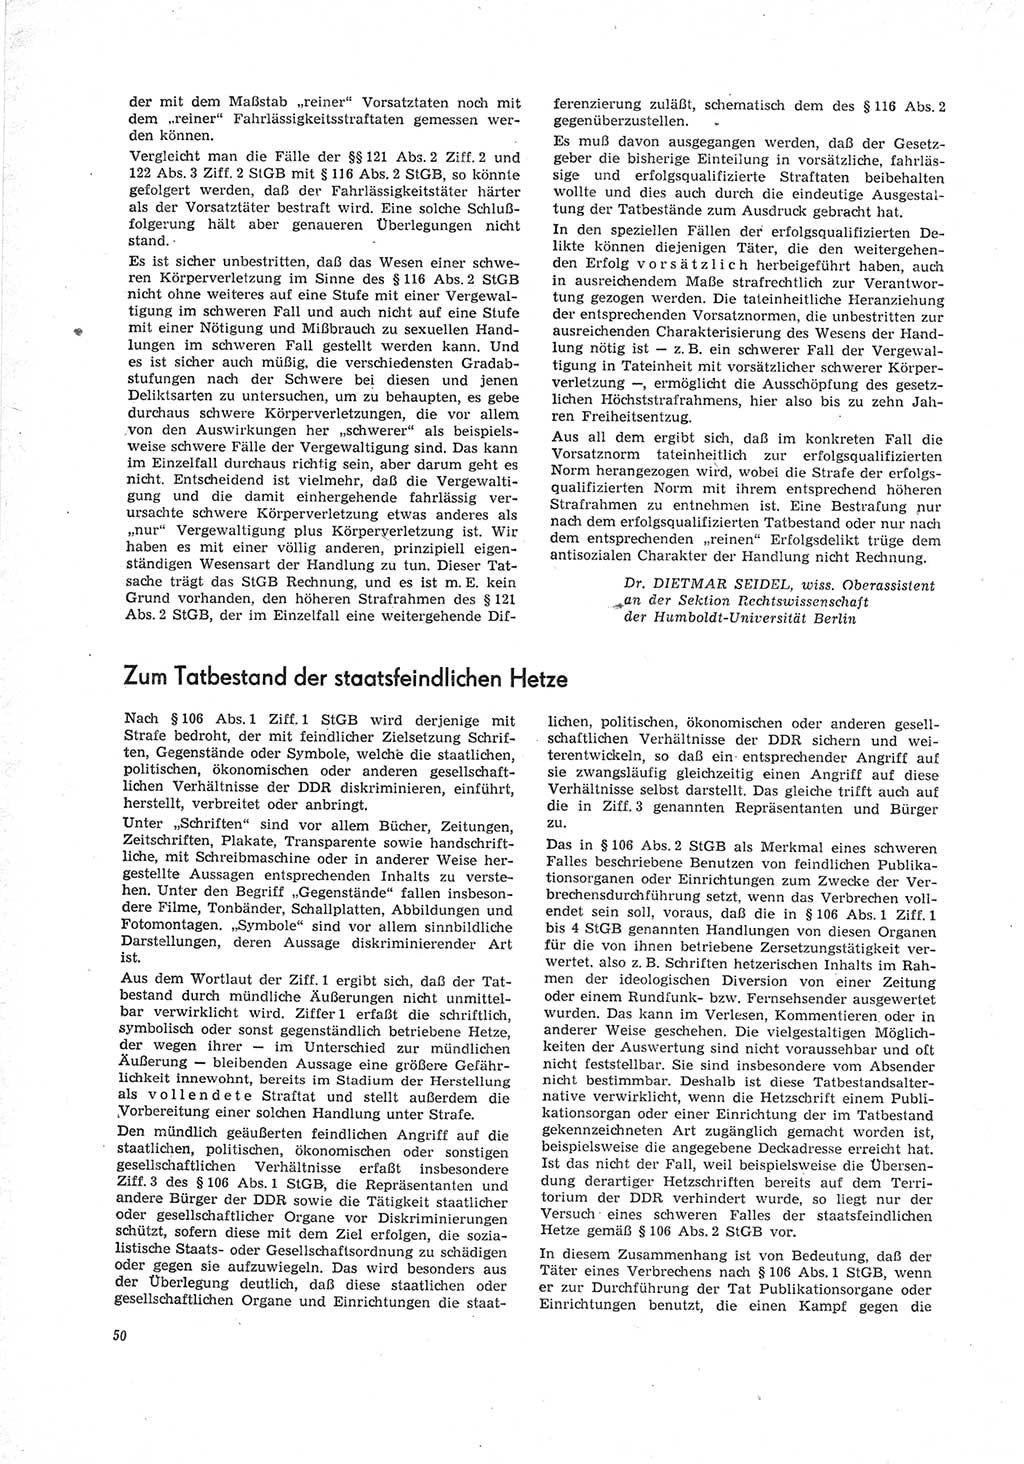 Neue Justiz (NJ), Zeitschrift für Recht und Rechtswissenschaft [Deutsche Demokratische Republik (DDR)], 23. Jahrgang 1969, Seite 50 (NJ DDR 1969, S. 50)